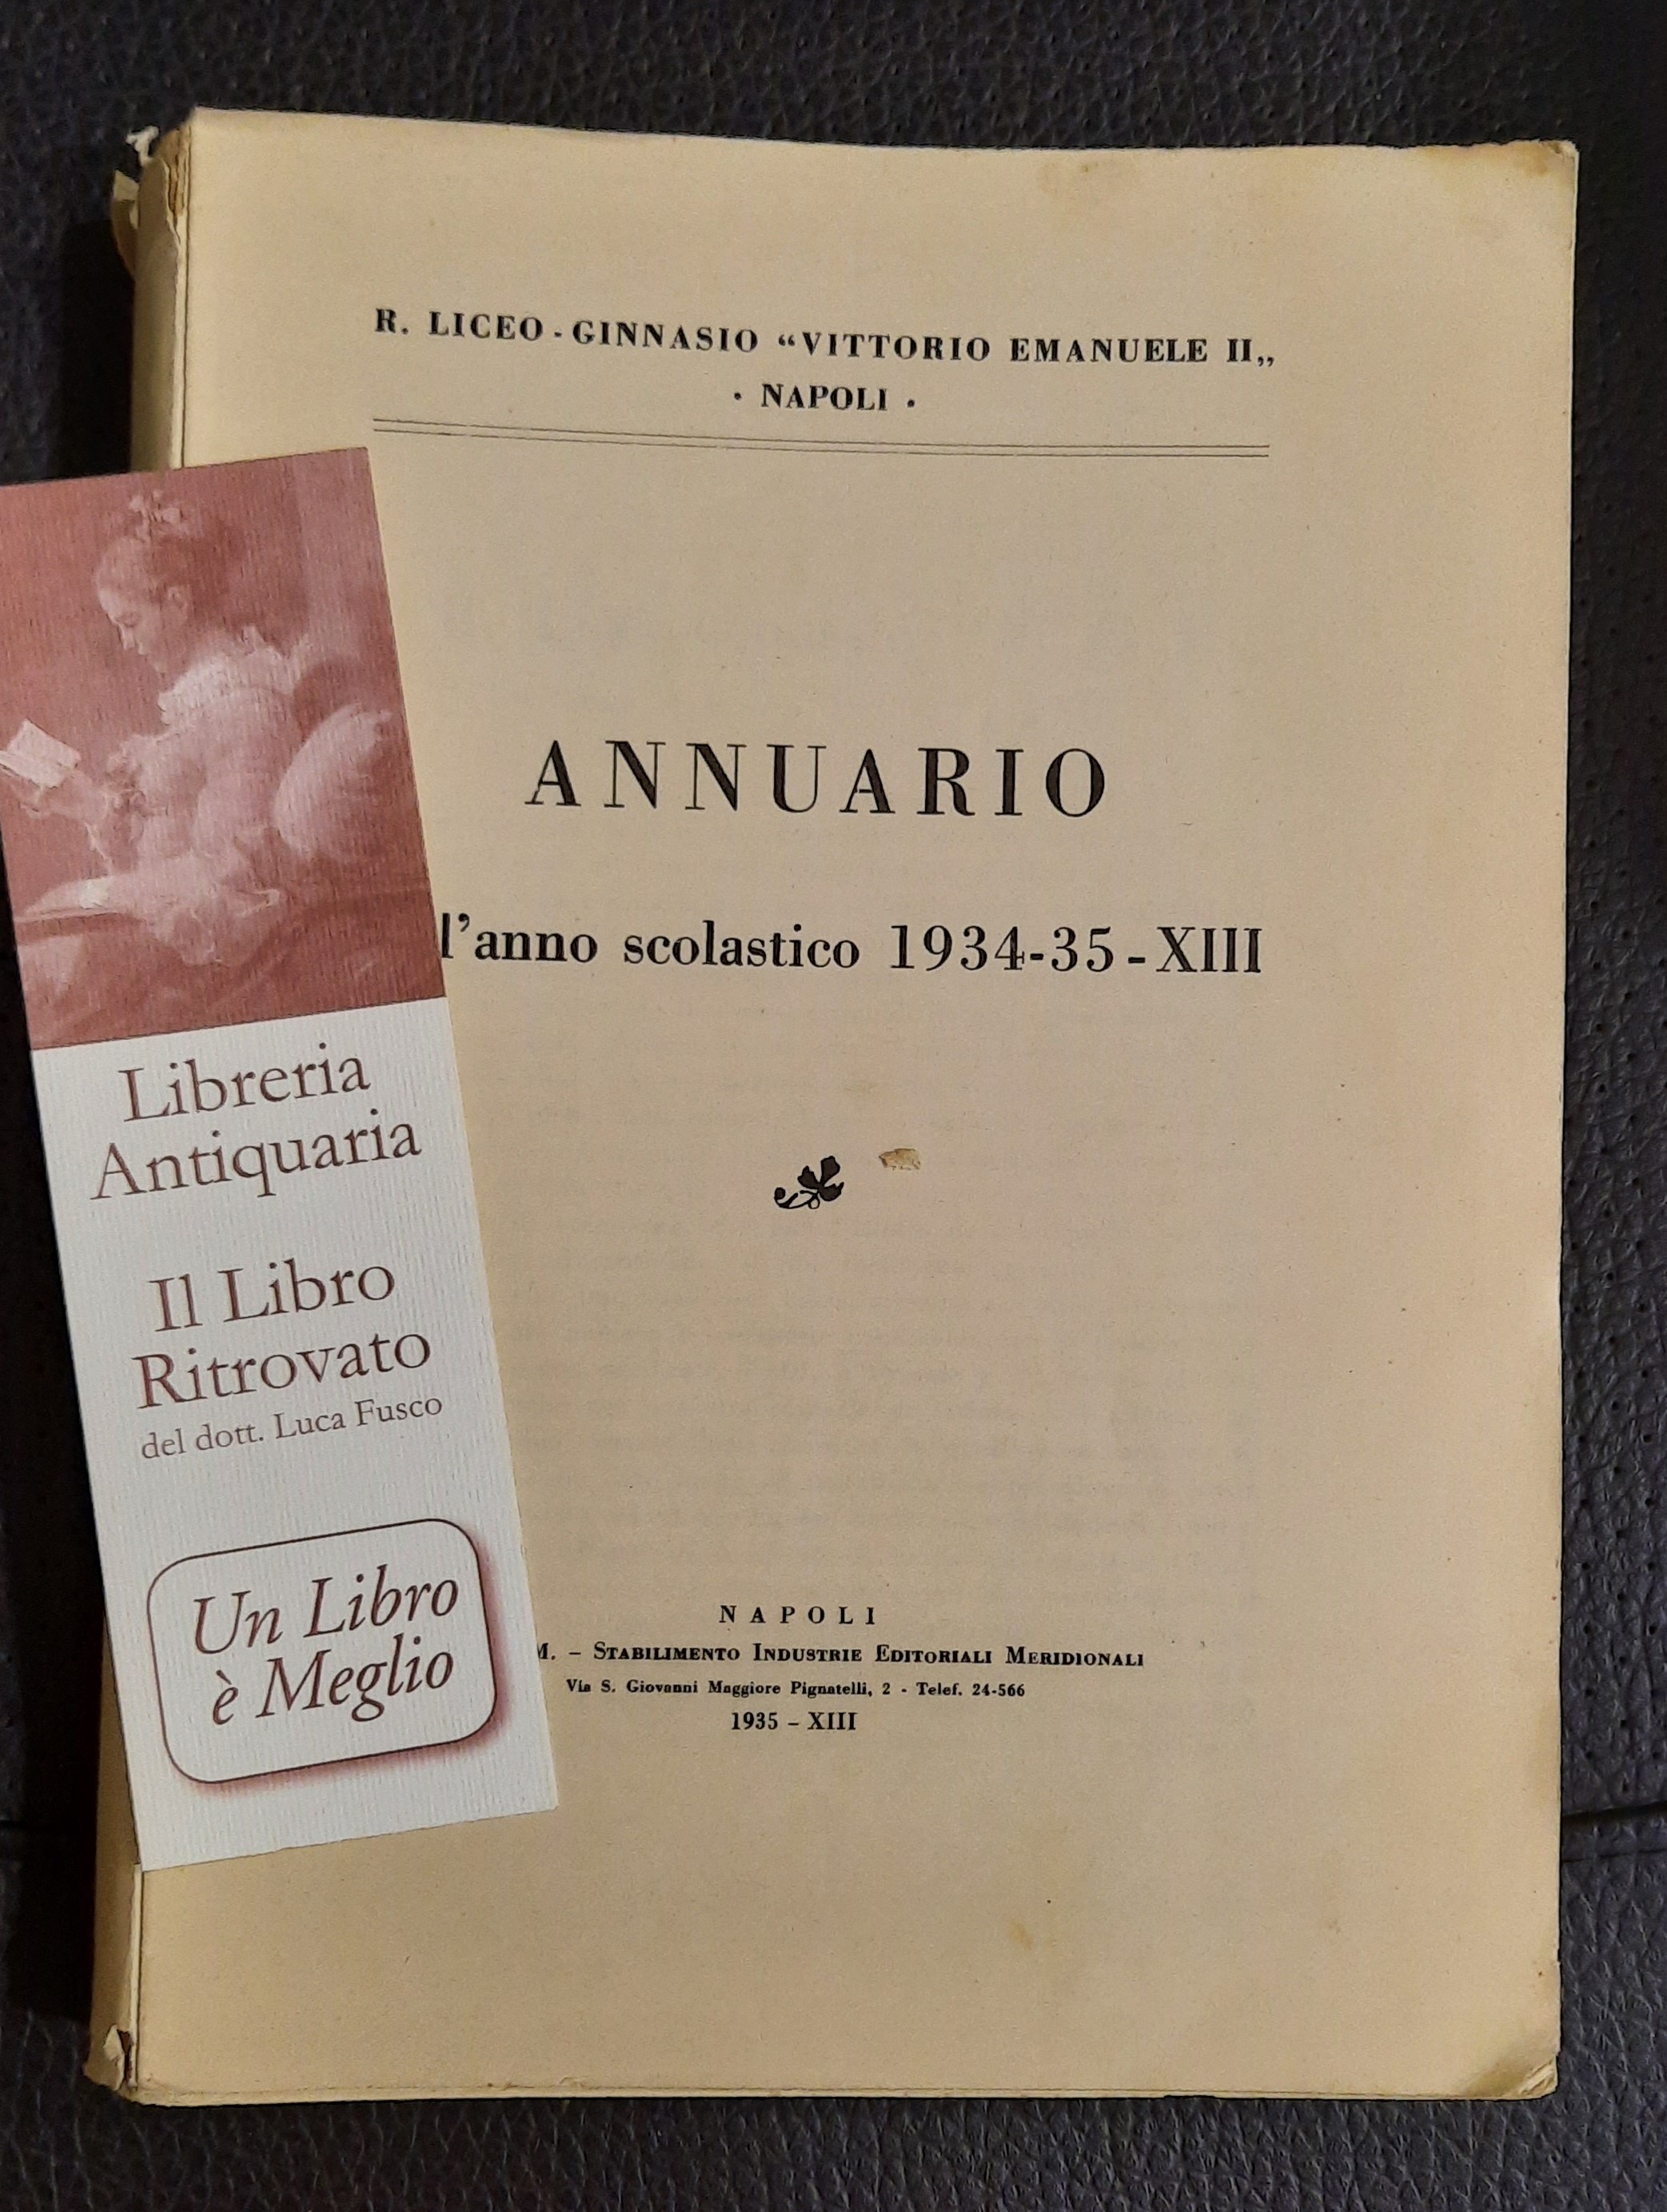 Annuario dell’anno scolastico 1934-35 del R. Liceo Ginnasio “Vittorio Emanuele …